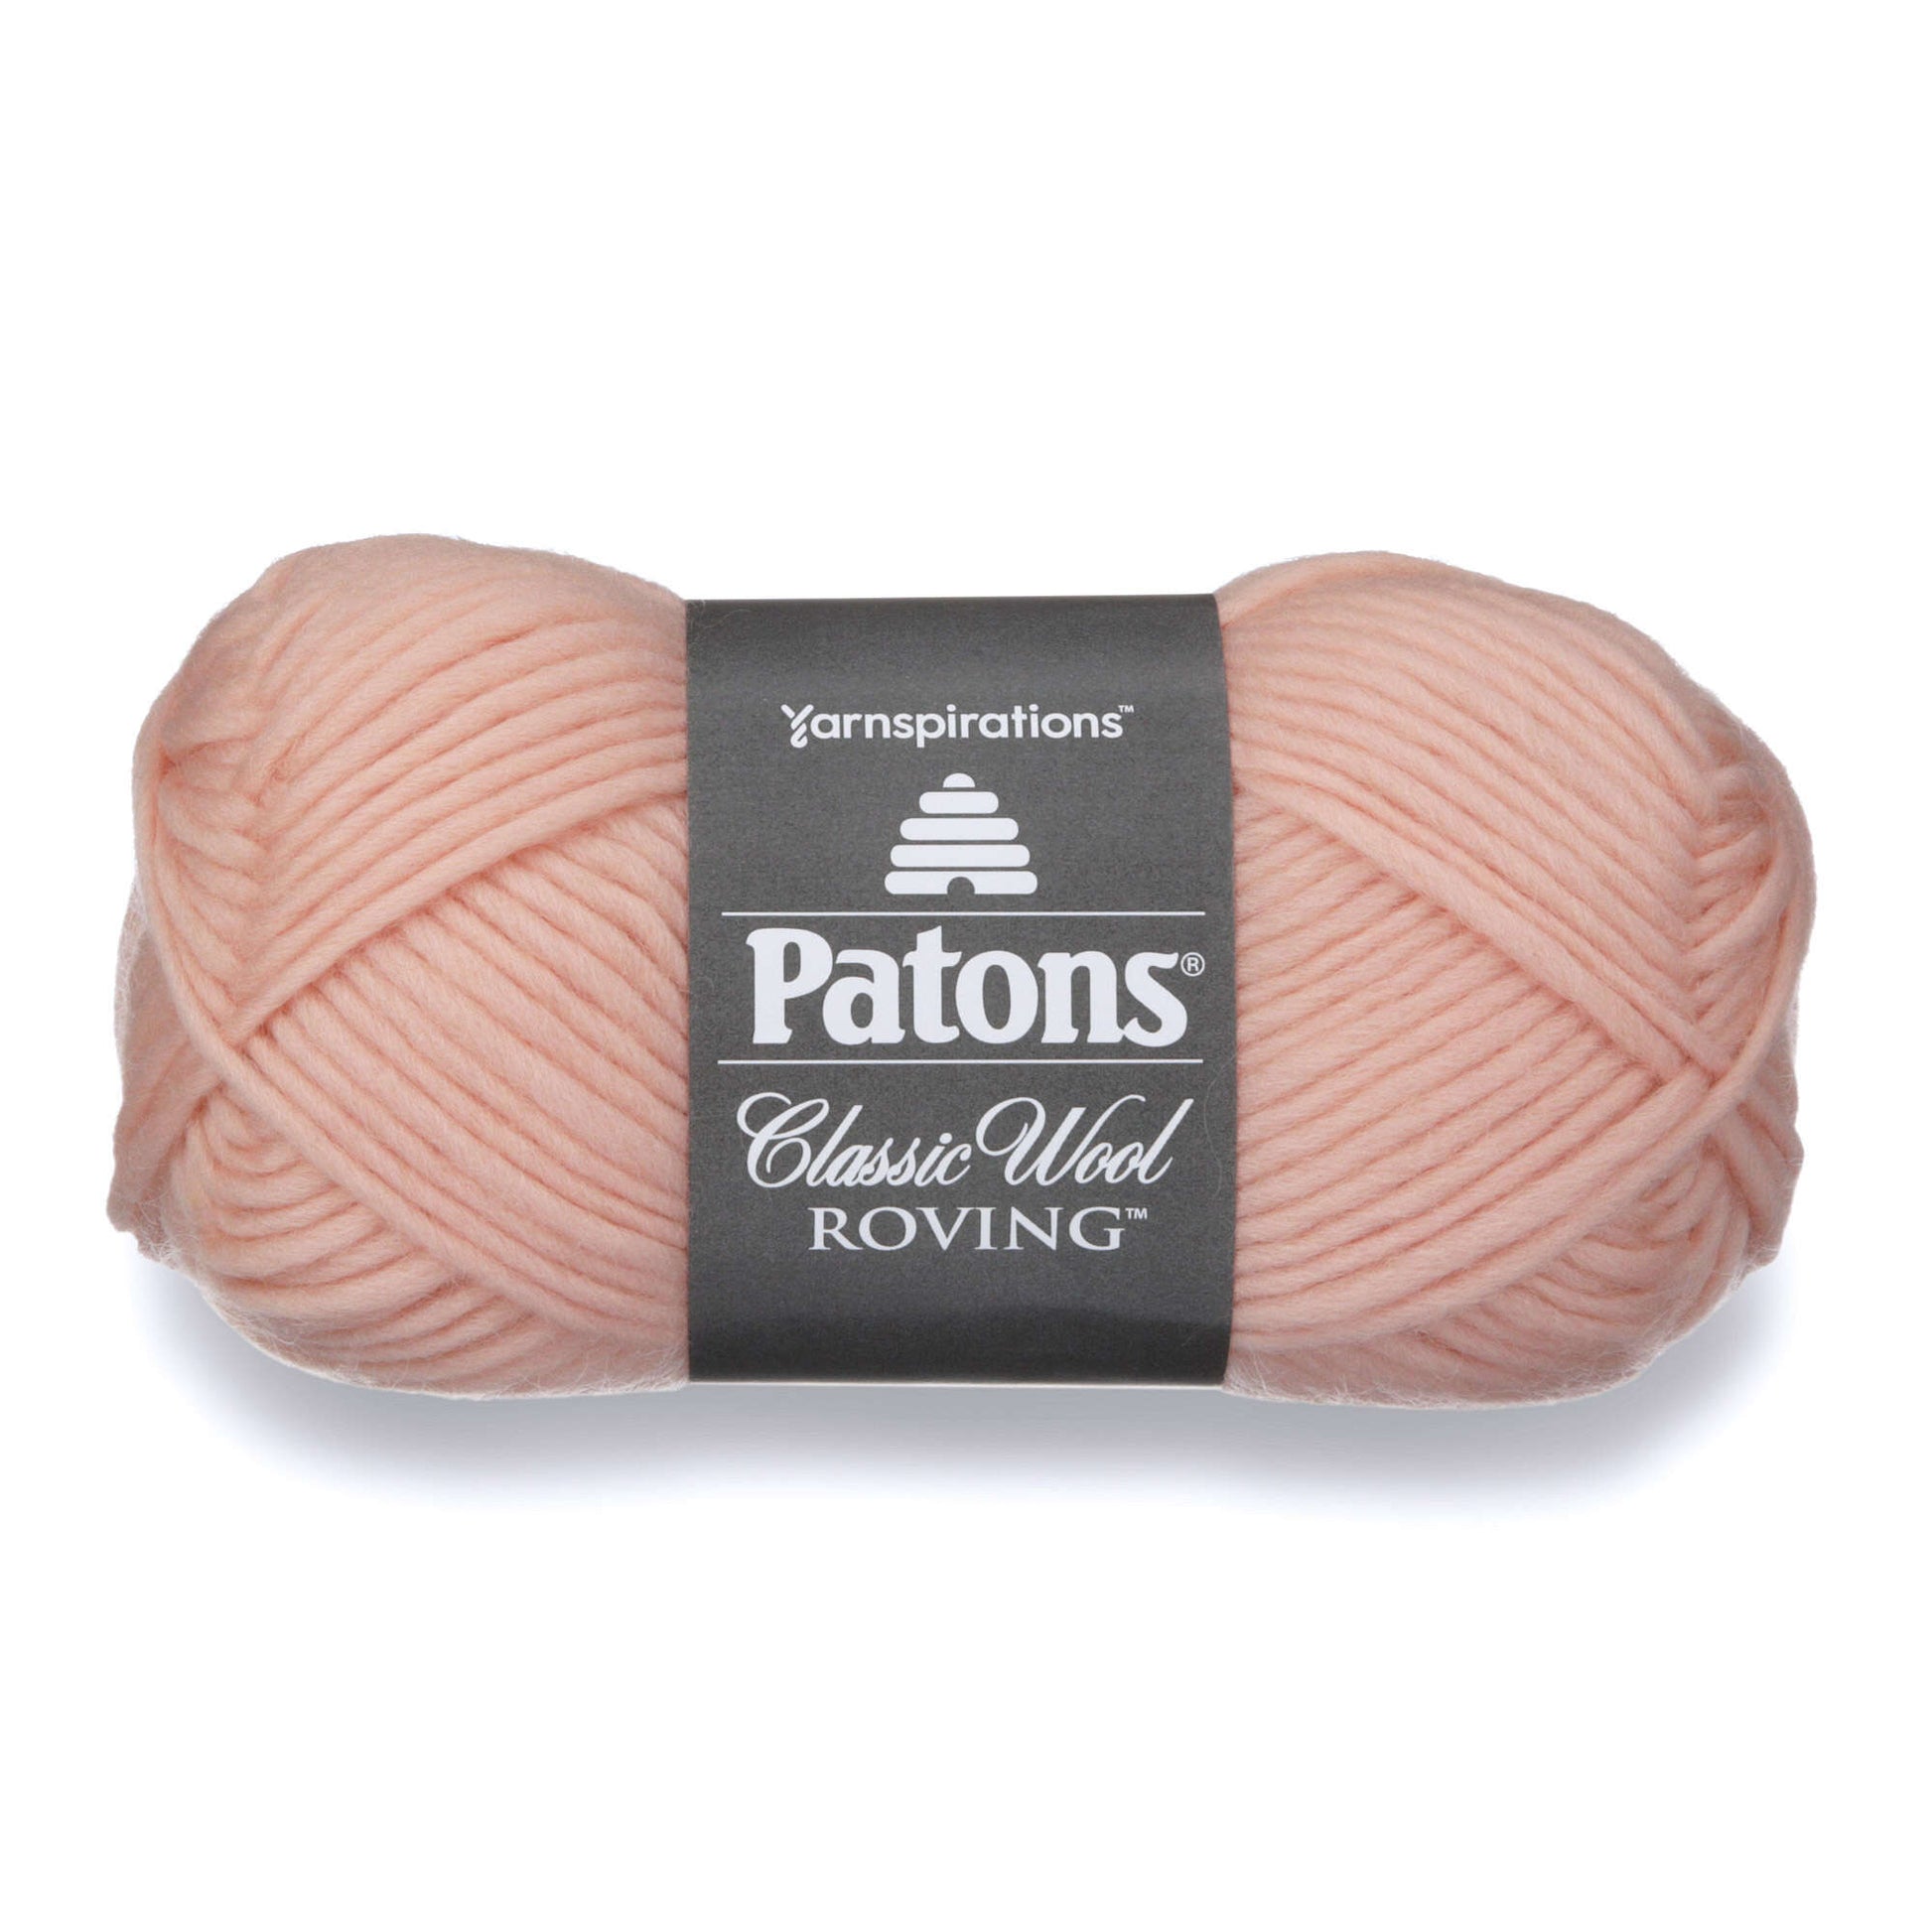 Patons Classic Wool Roving Yarn Pale Blush